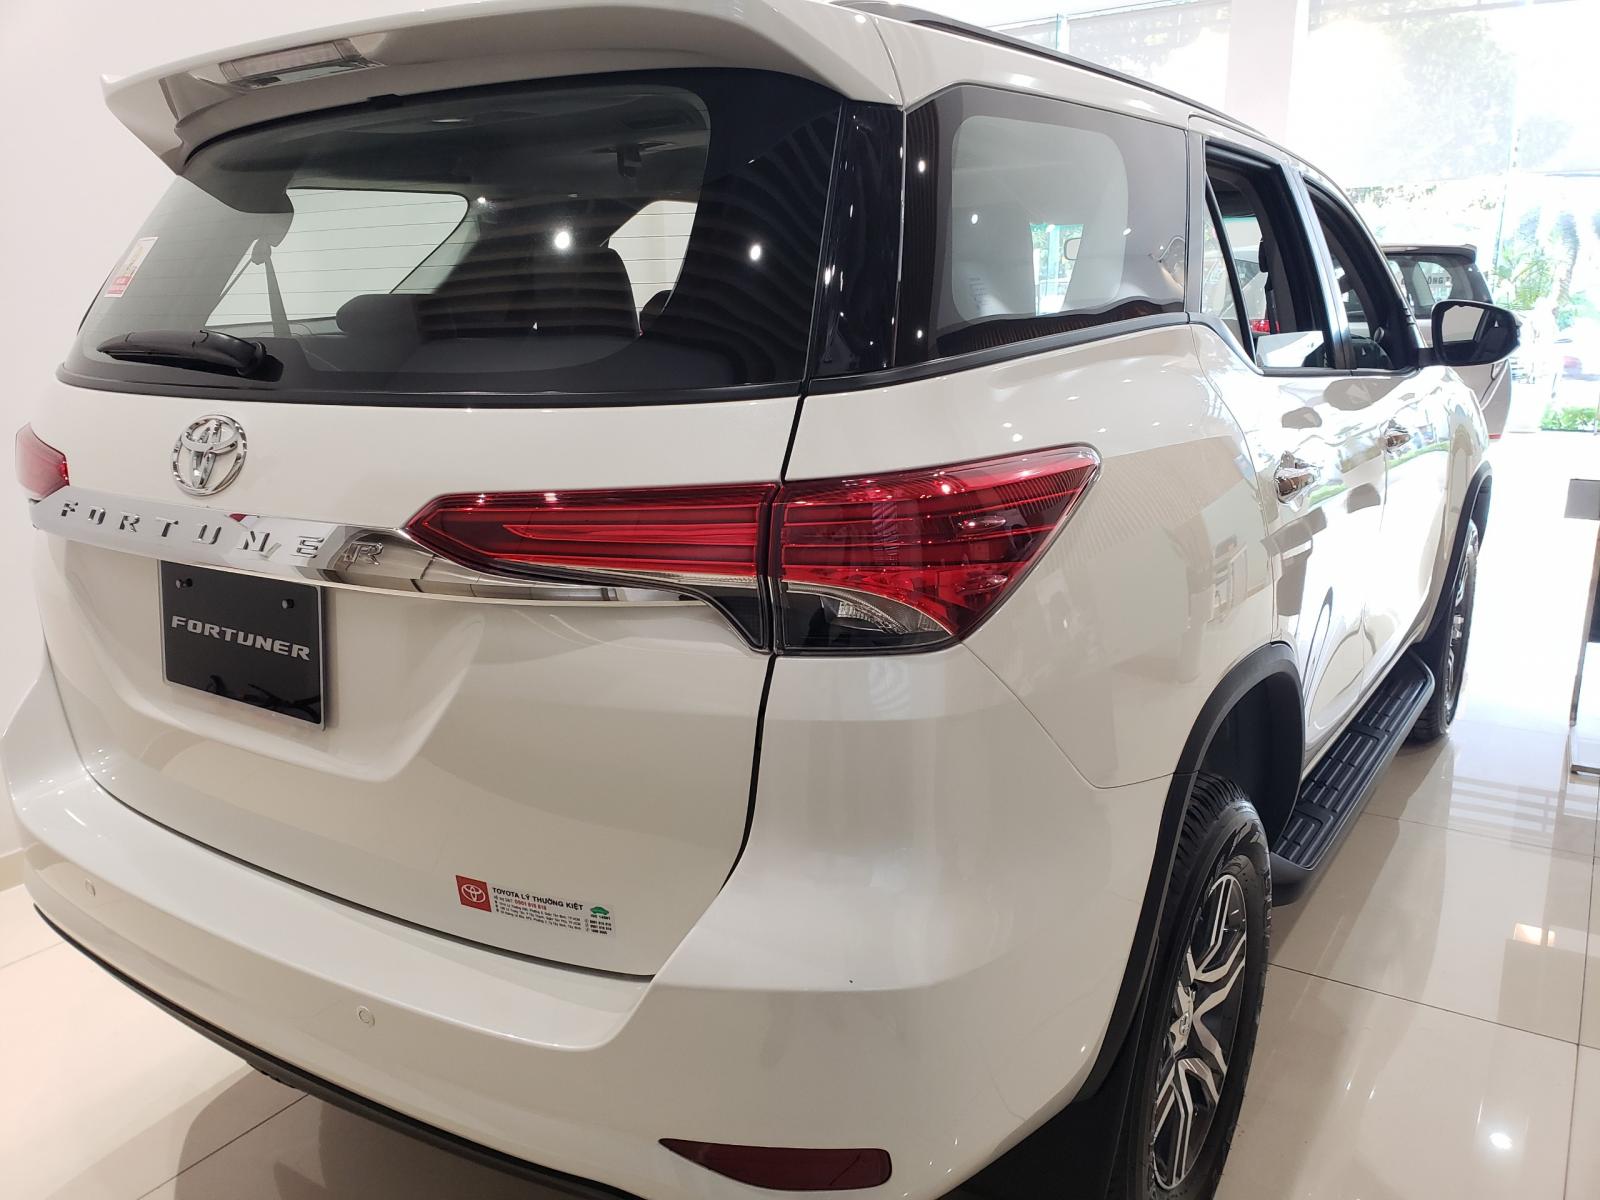 Toyota Fortuner 2020 - Toyota Tây Ninh bán Fortuner 2.4G 2020 giảm ngay 50Tr giá chỉ còn 983Tr - trả góp LS 0.5%/tháng - LH 0938.49.86.89